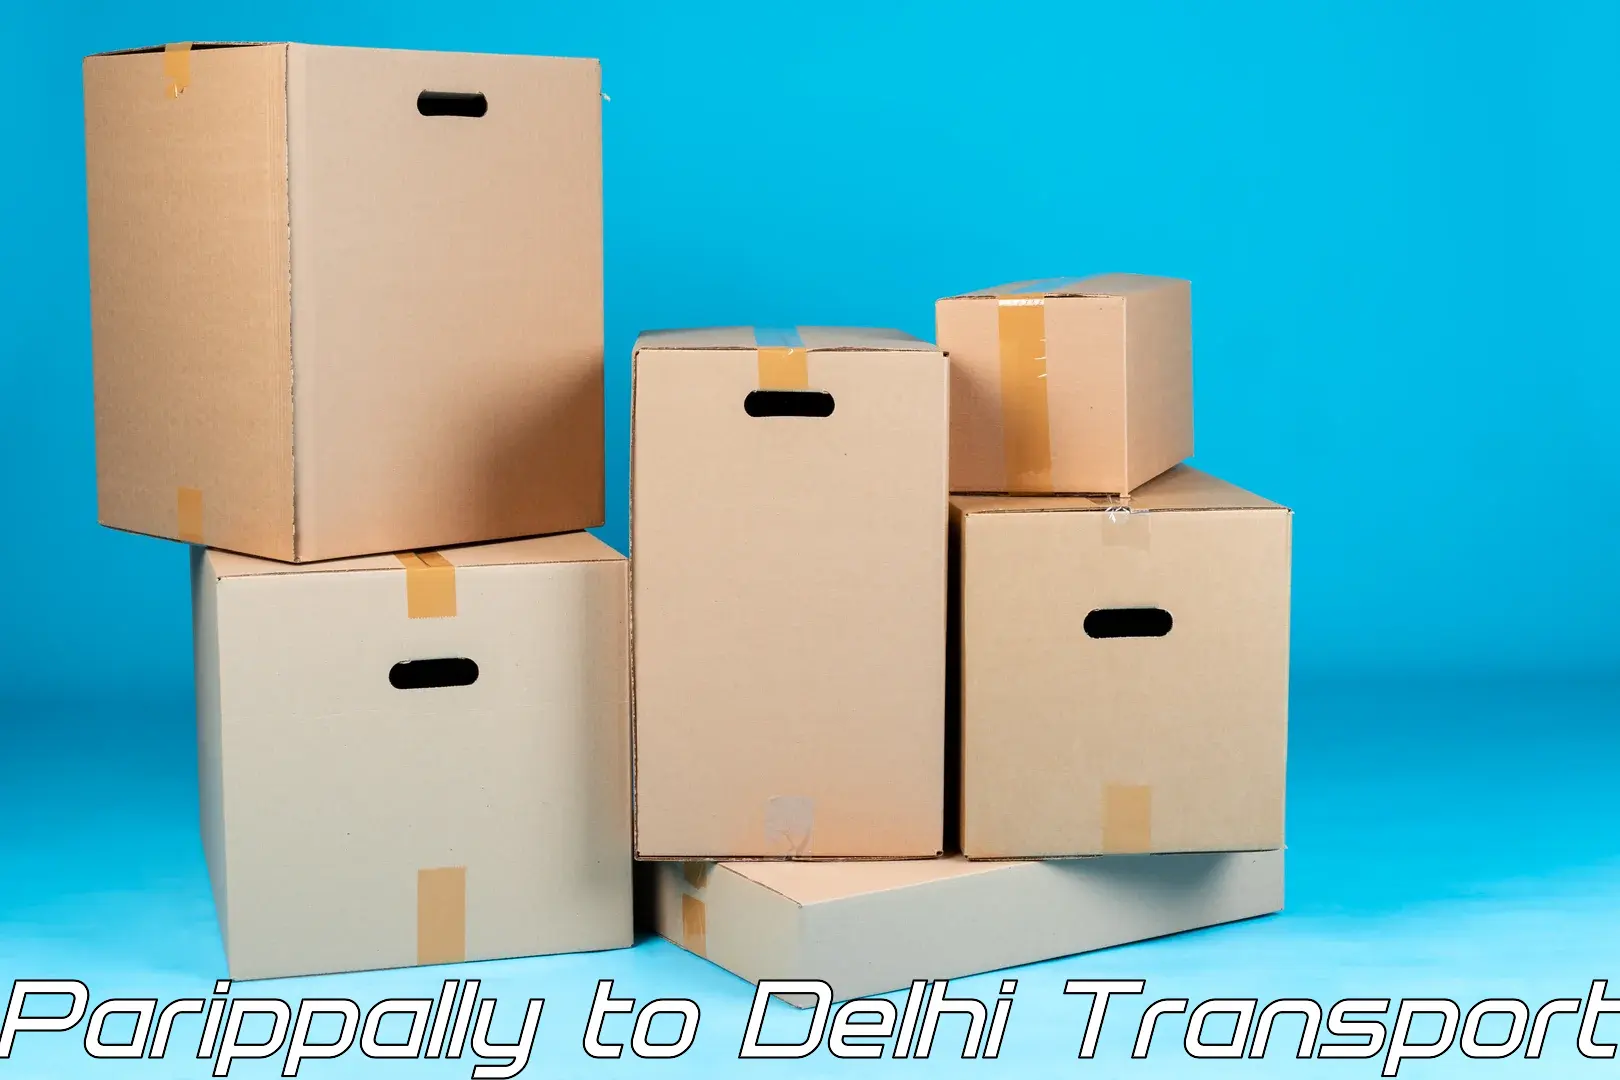 Part load transport service in India Parippally to Jamia Millia Islamia New Delhi